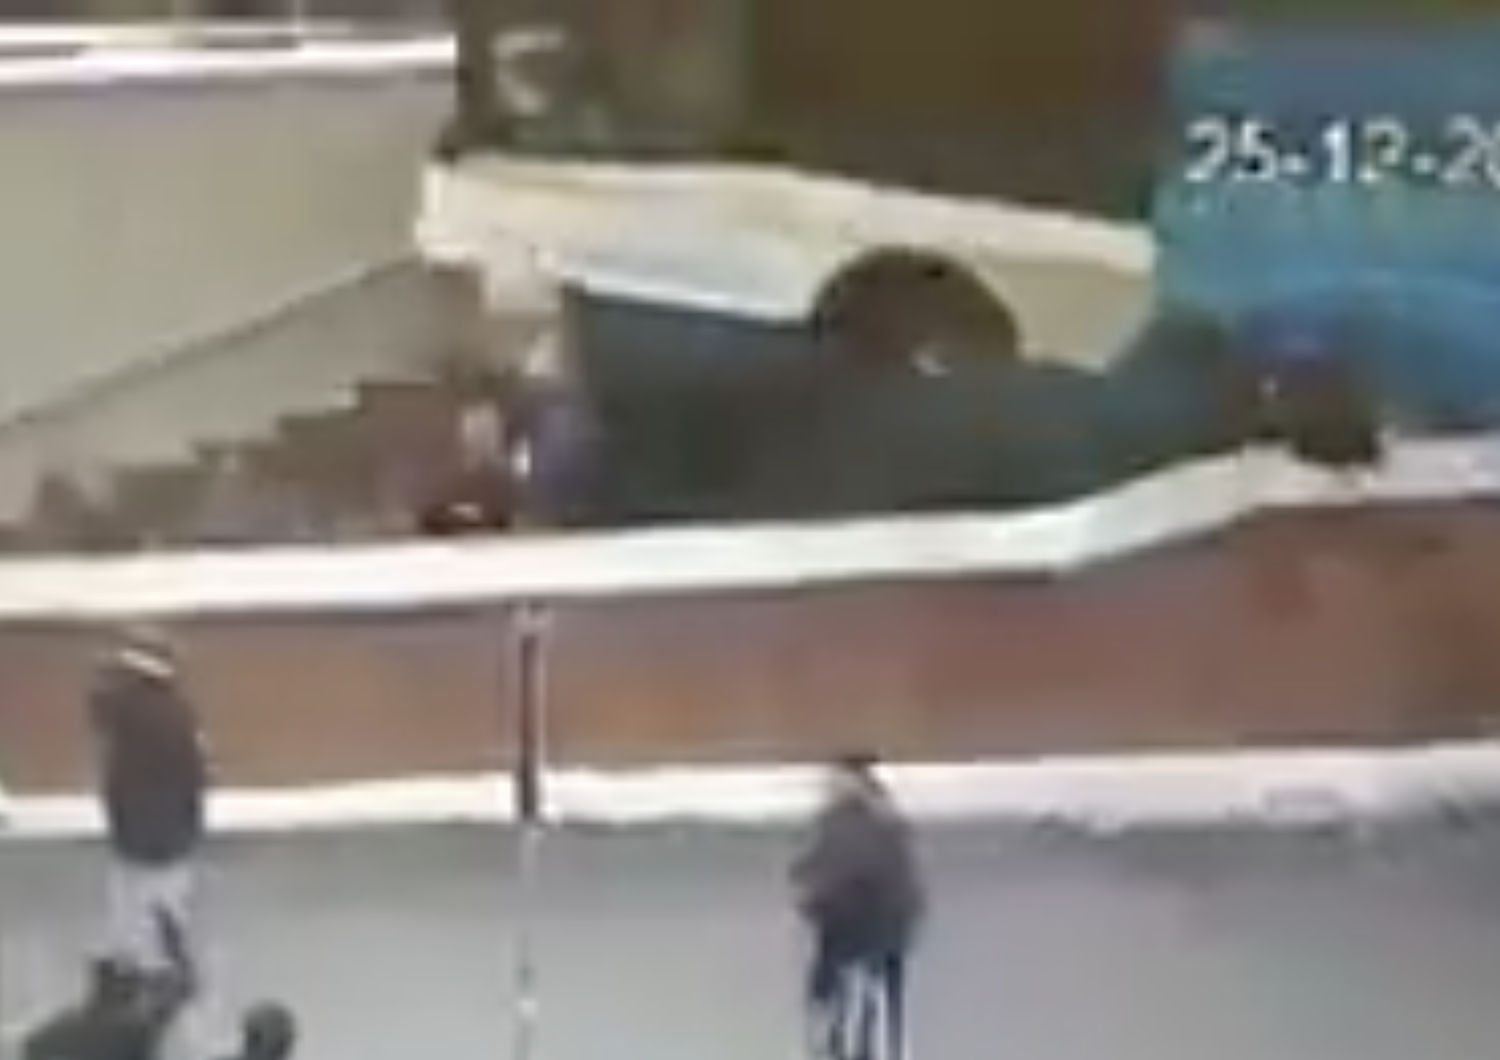 Un autobus si &egrave; schiantato in un sottopasso a Mosca uccidendo 5 persone. Le immagini&nbsp;